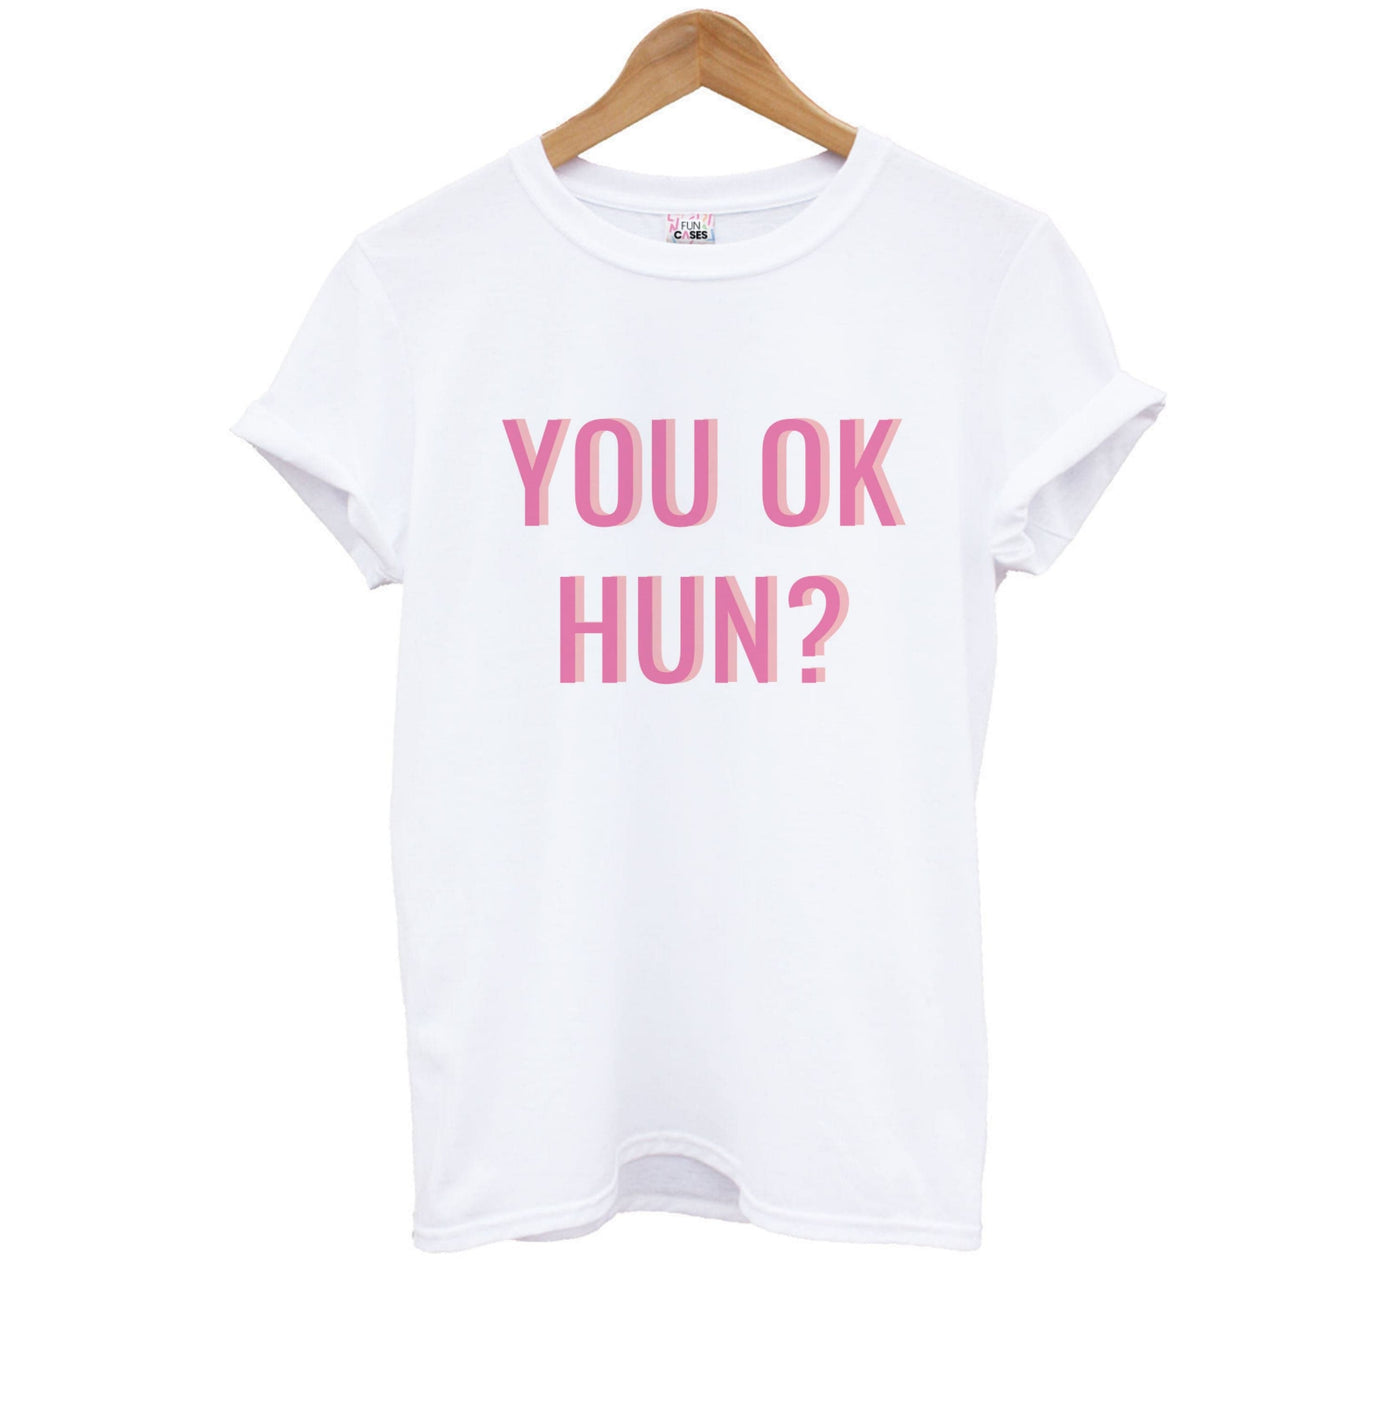 You OK Hun? Kids T-Shirt